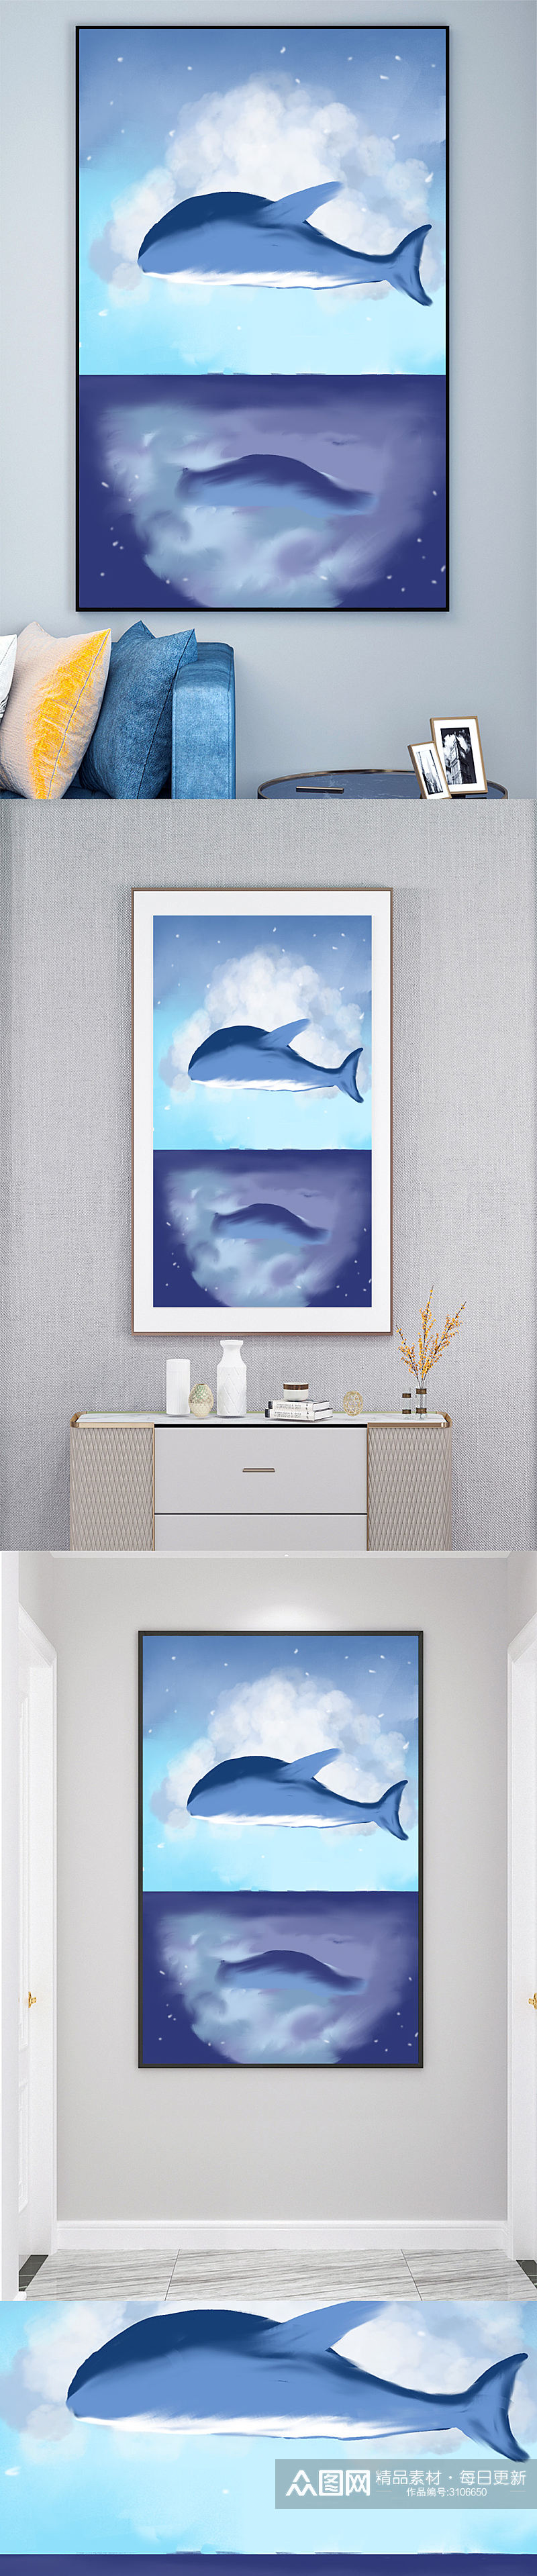 油画海洋蓝鲸动物装饰画素材